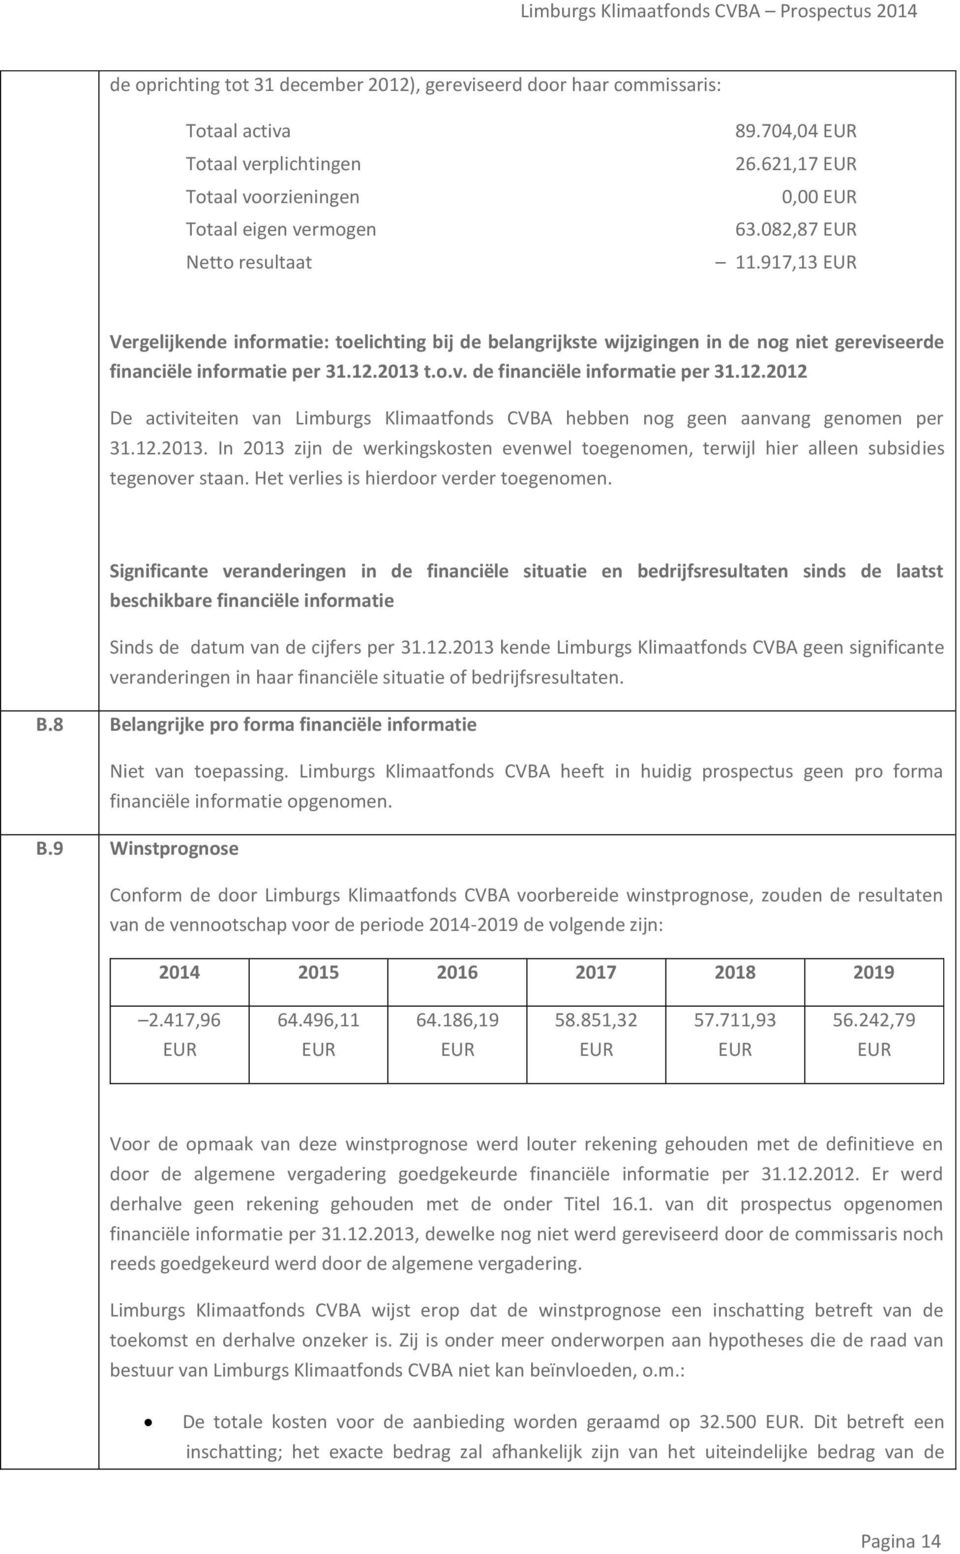 12.2012 De activiteiten van Limburgs Klimaatfonds CVBA hebben nog geen aanvang genomen per 31.12.2013. In 2013 zijn de werkingskosten evenwel toegenomen, terwijl hier alleen subsidies tegenover staan.